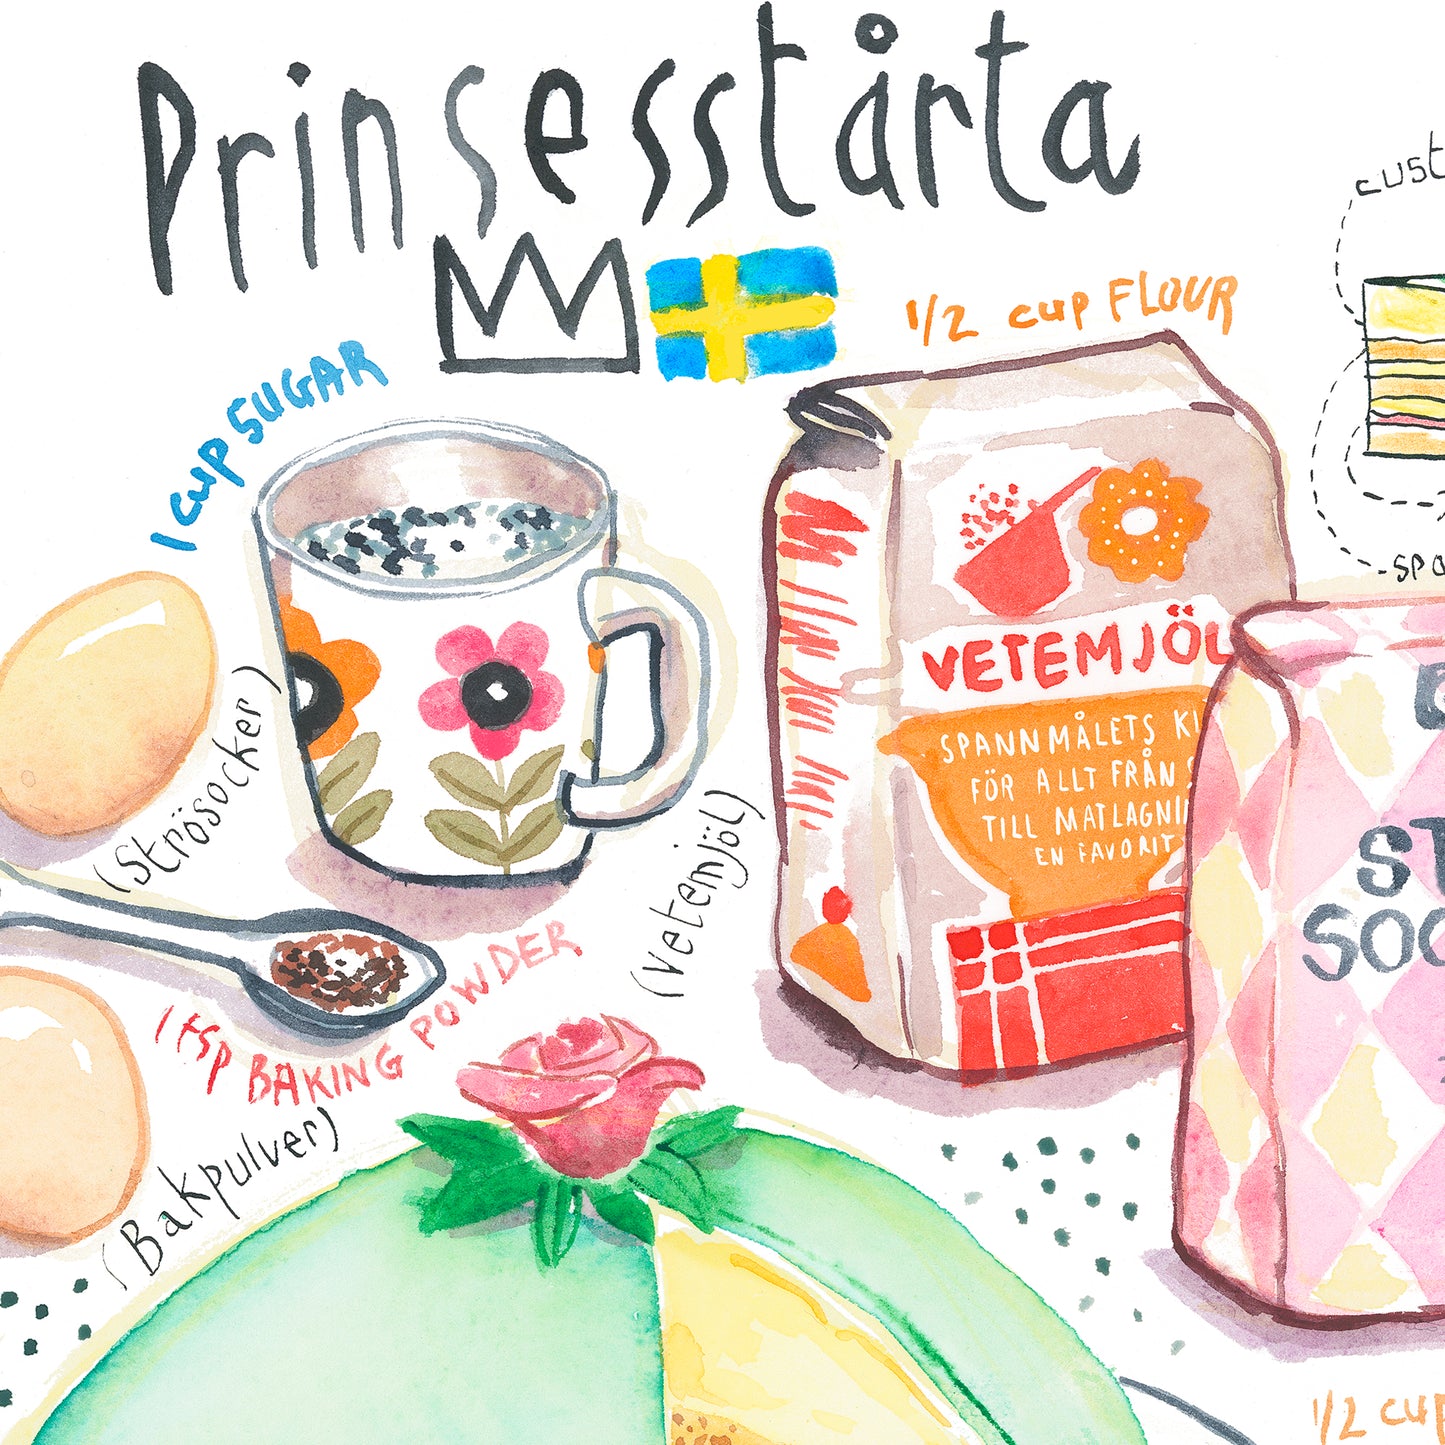 Swedish Princess Cake recipe - Prinsesstårta